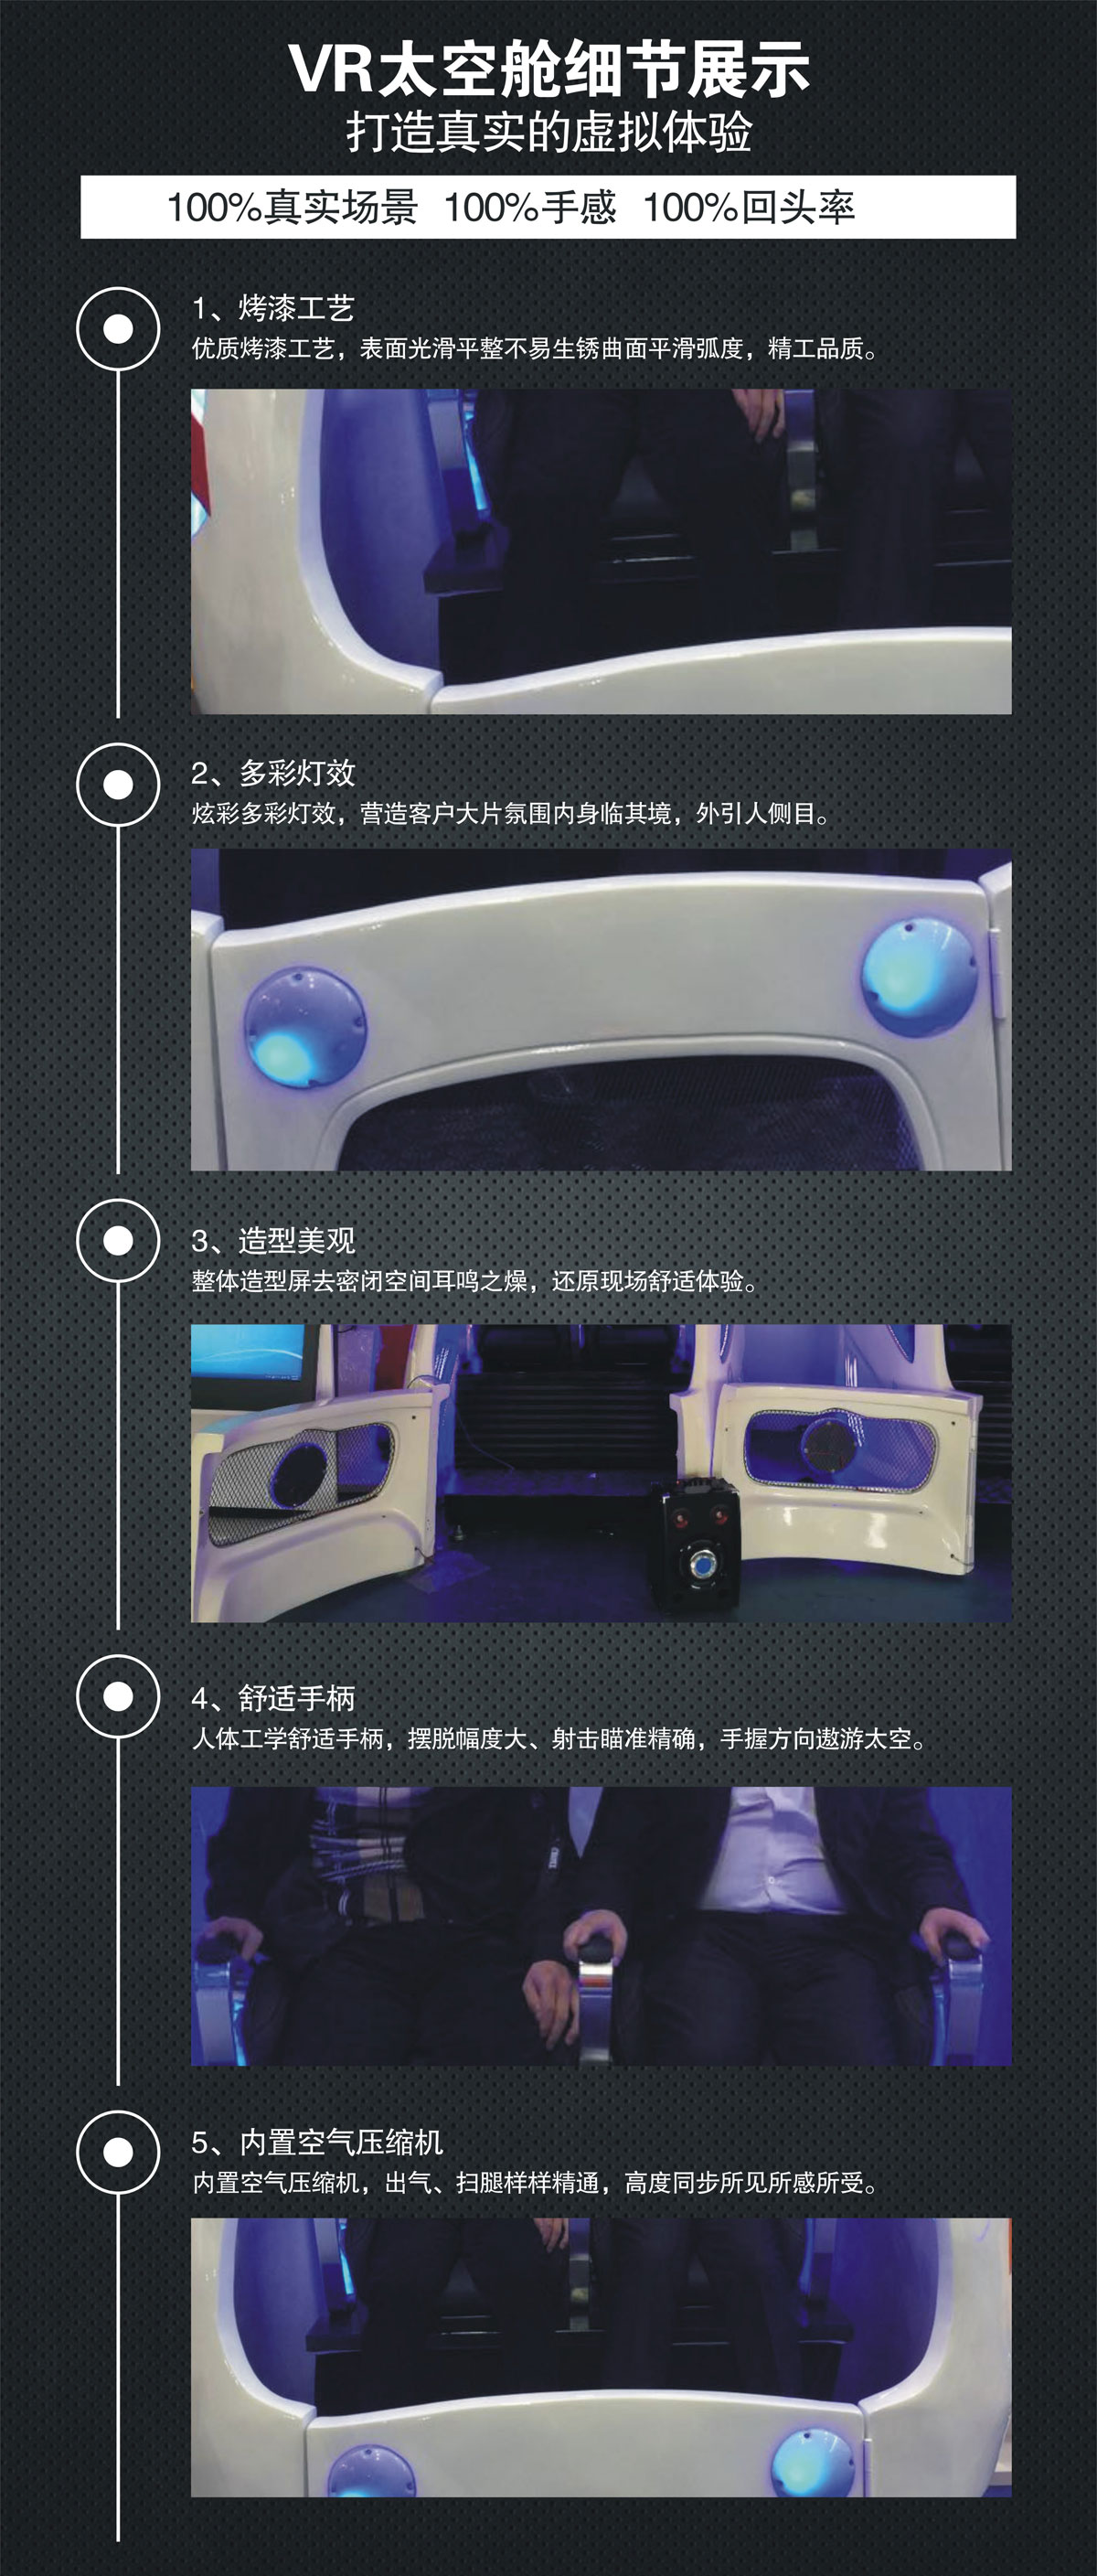 巨幕影院VR太空舱细节展示.jpg